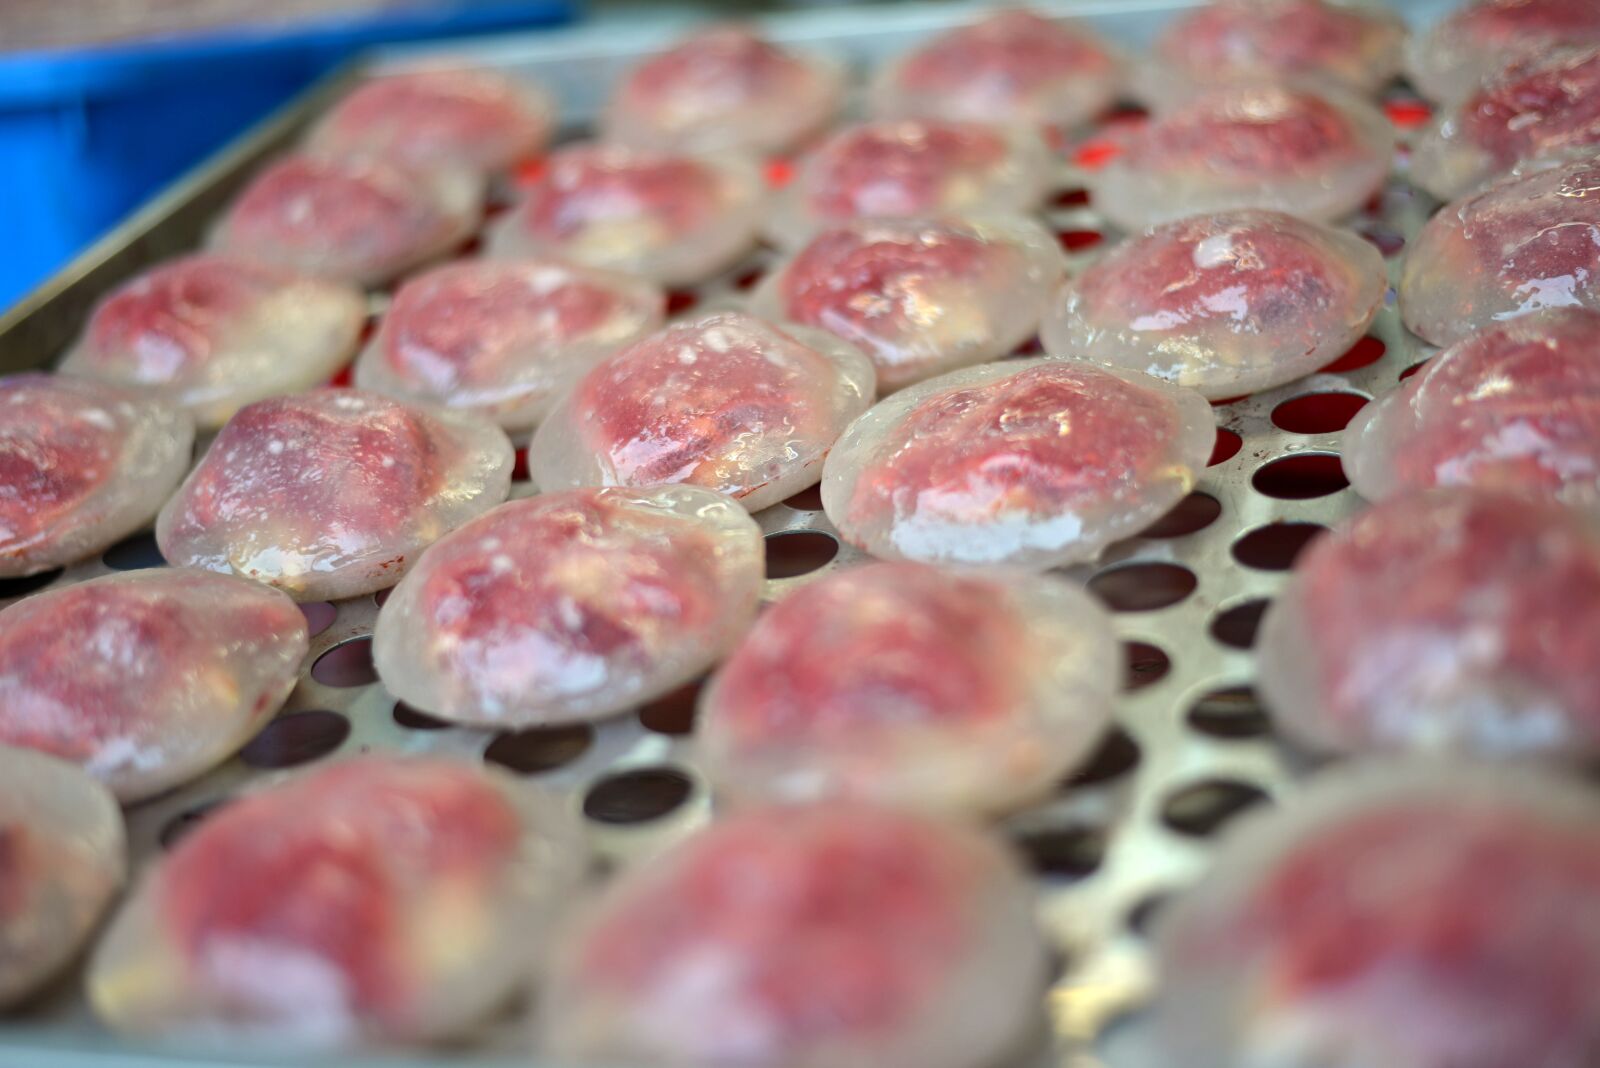 Nikon D800E sample photo. Meatballs, pork, gourmet photography